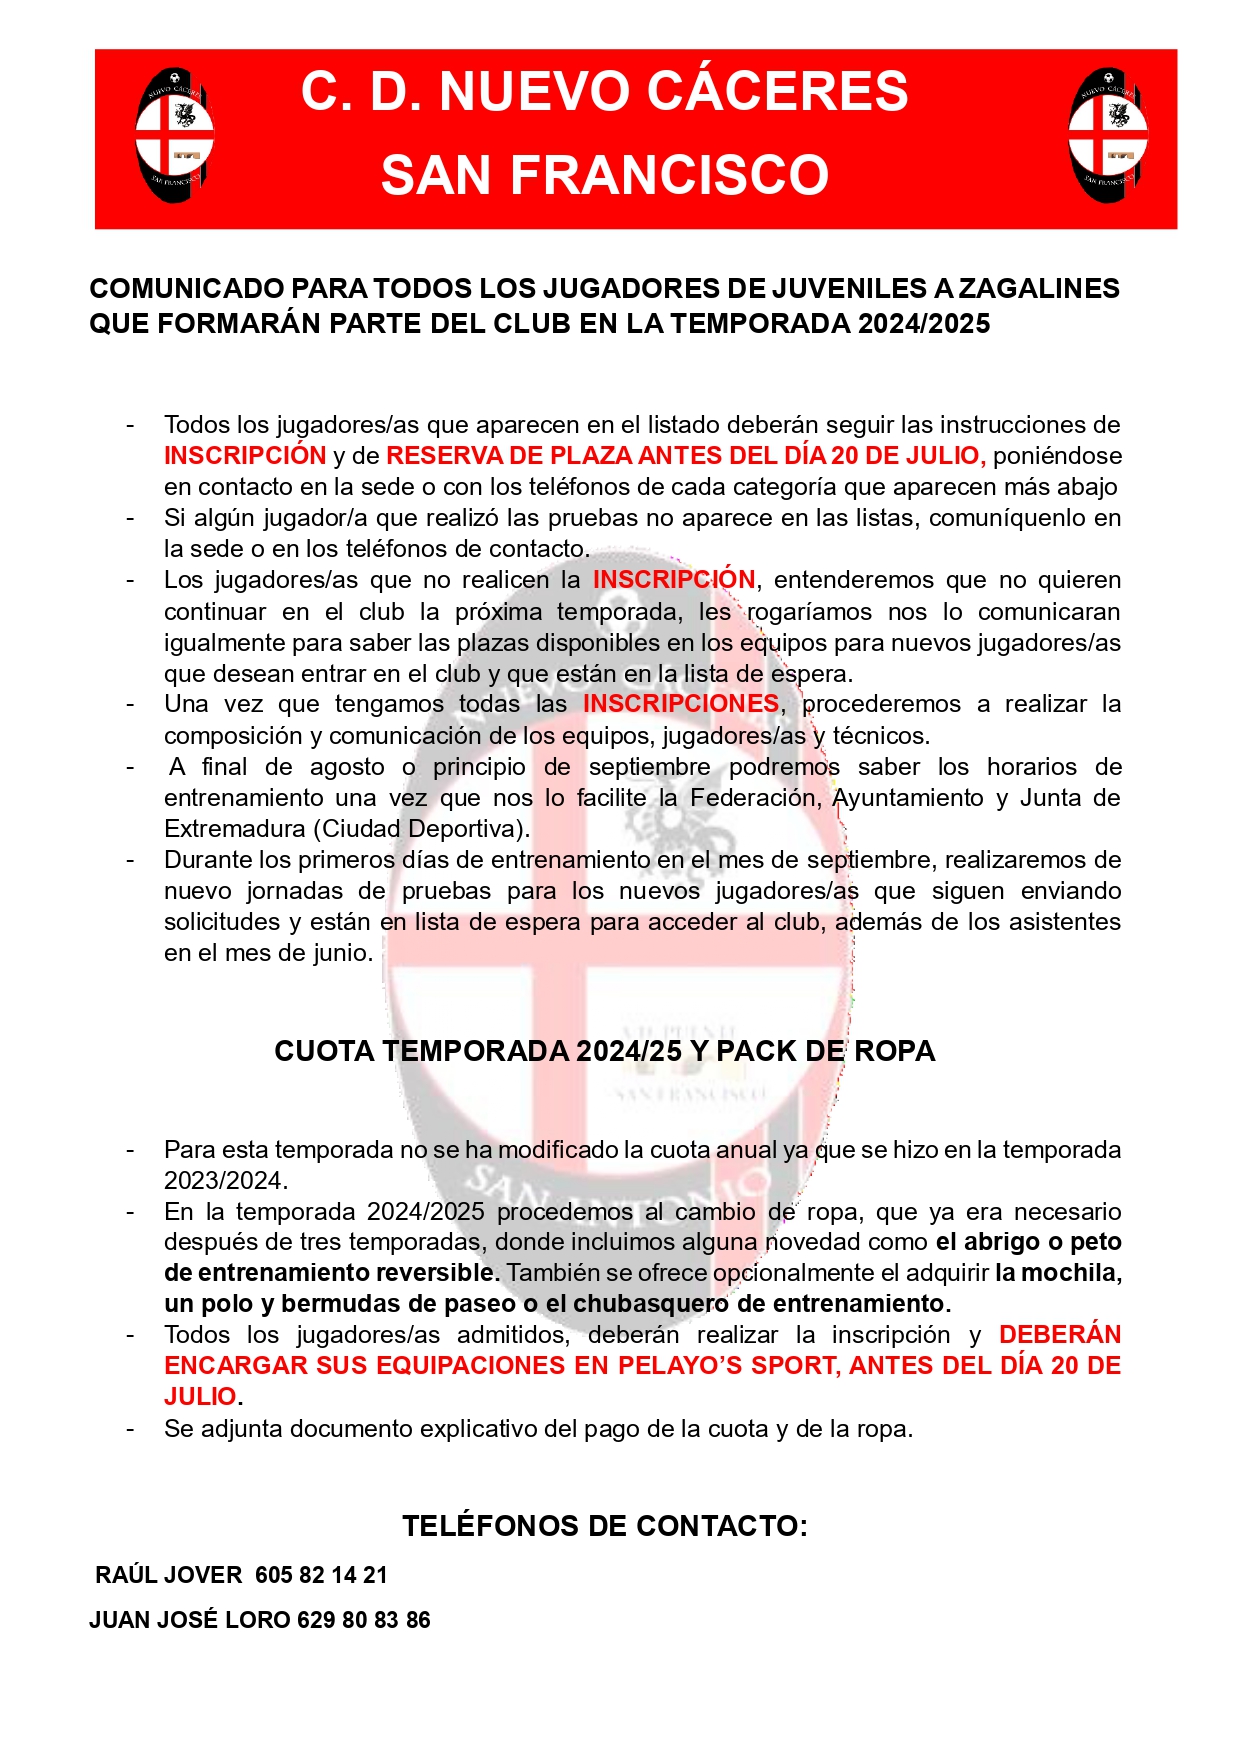 COMUNICADO INFORMATIVO PARA TODOS  LOS JUGADORES DE JUVENILES A ZAGALINES TEMPORADA 2024/2025